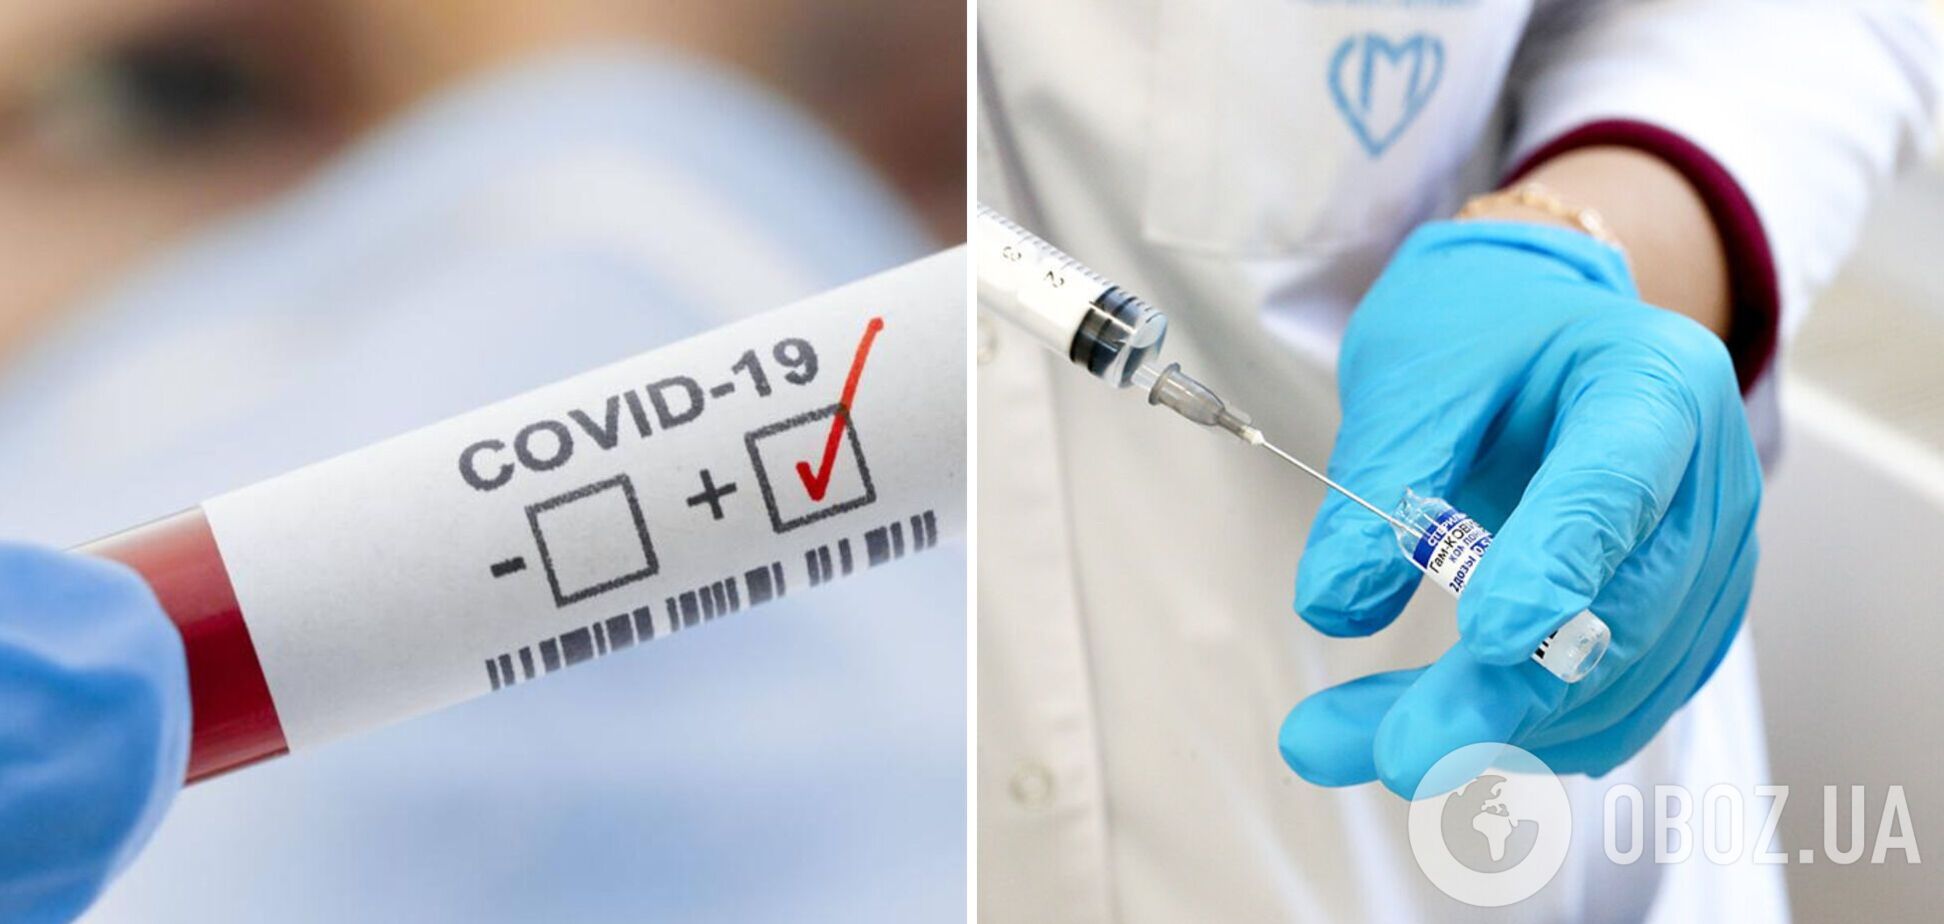 COVID-19 никуда не пропал: в Минздраве напомнили о необходимости вакцинироваться